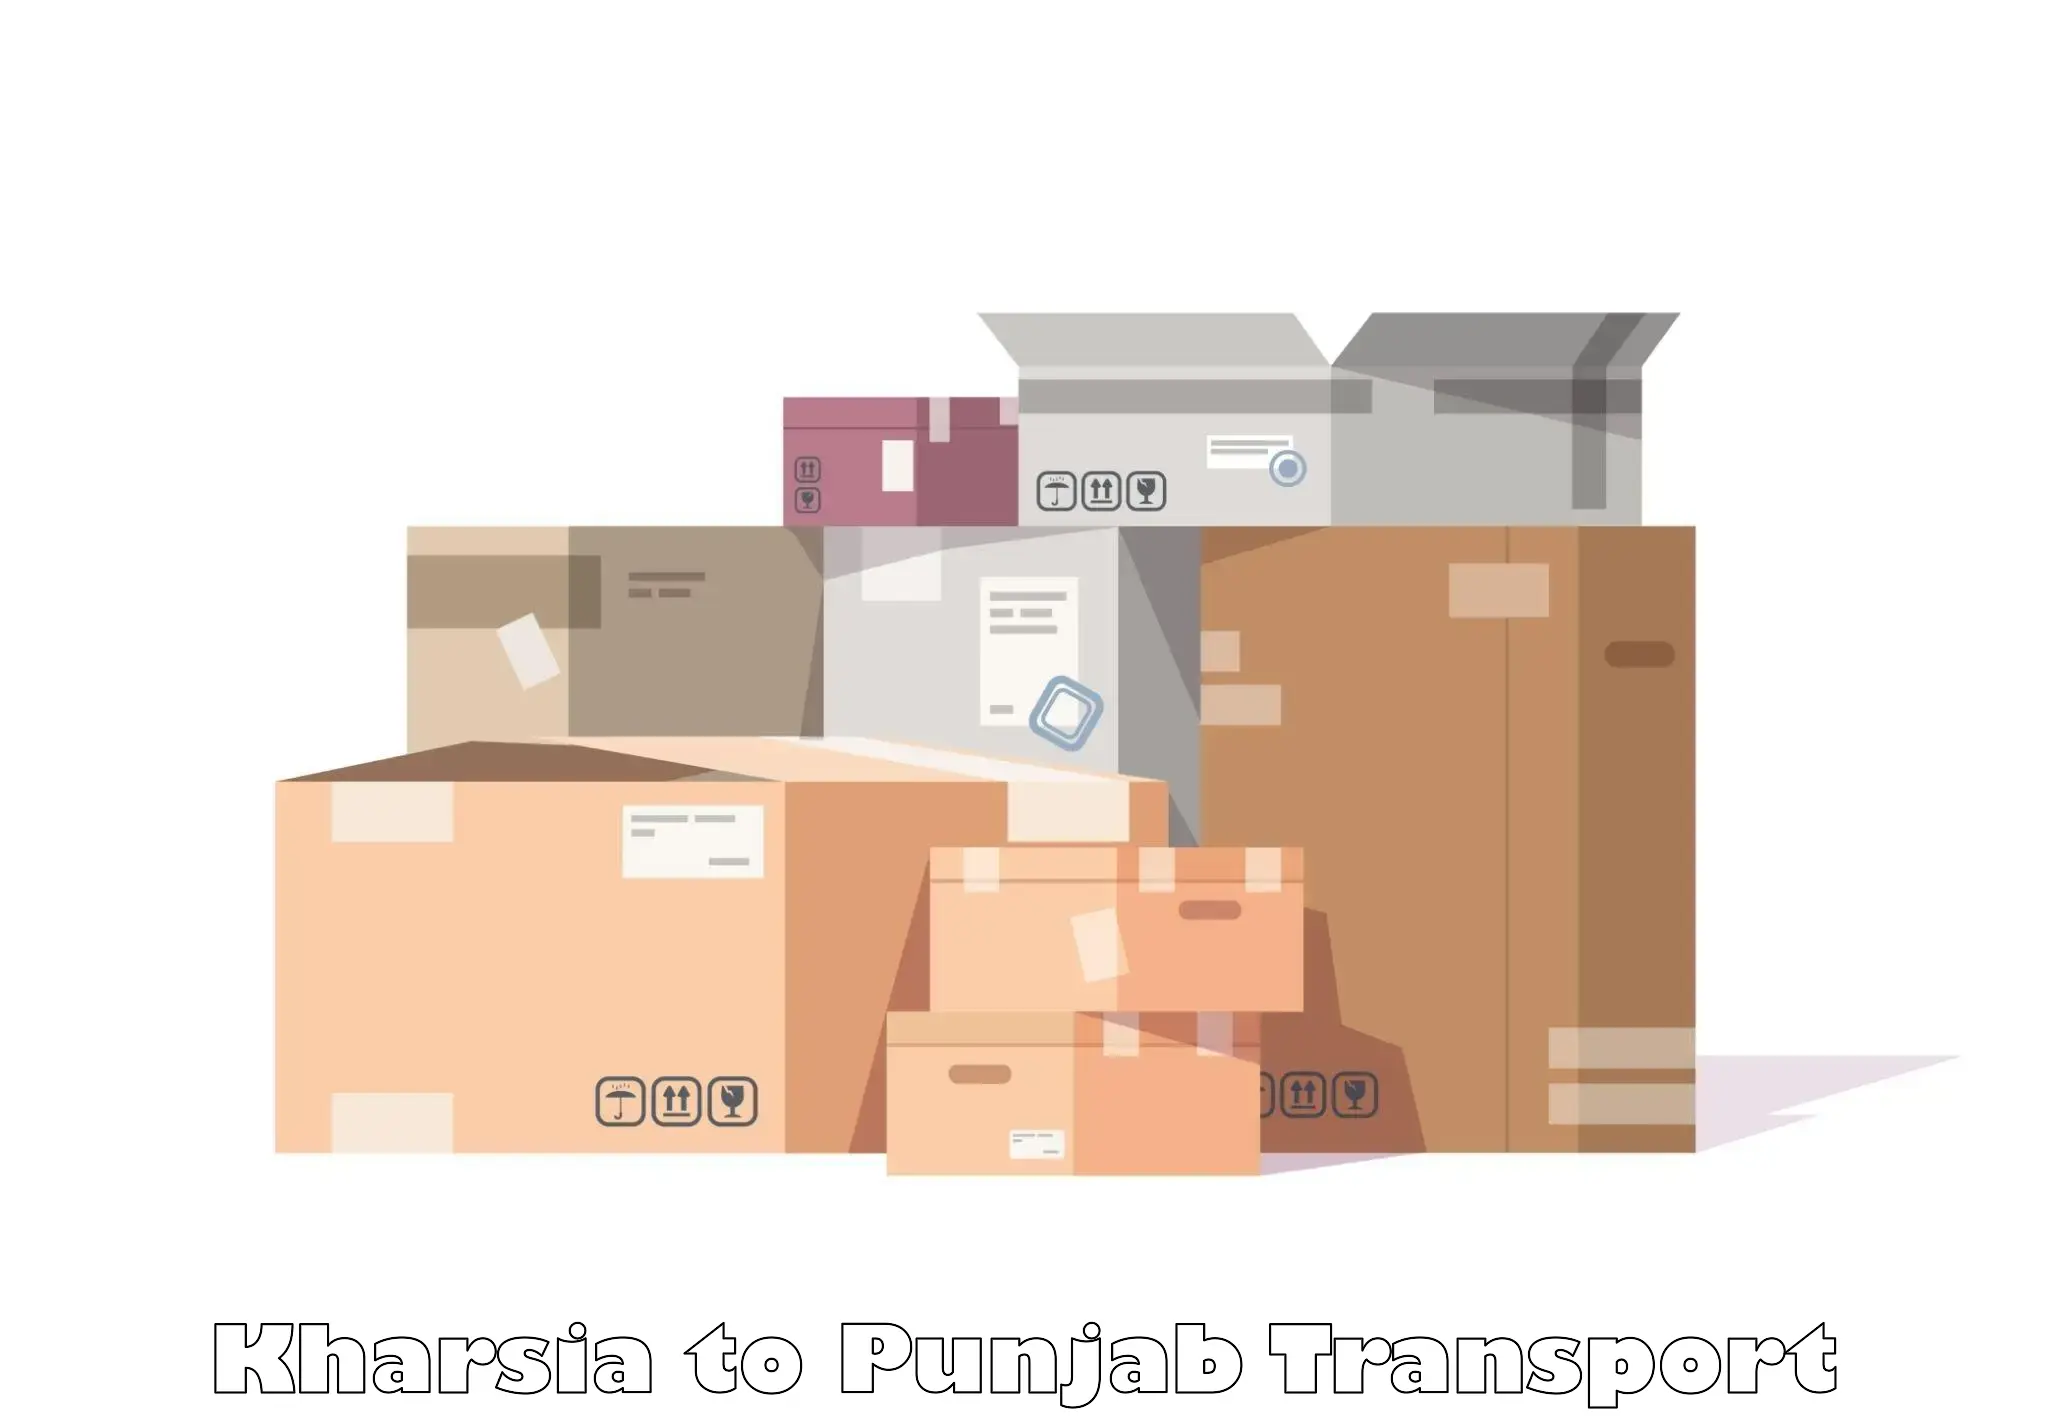 Furniture transport service Kharsia to Patti Tarn Tara